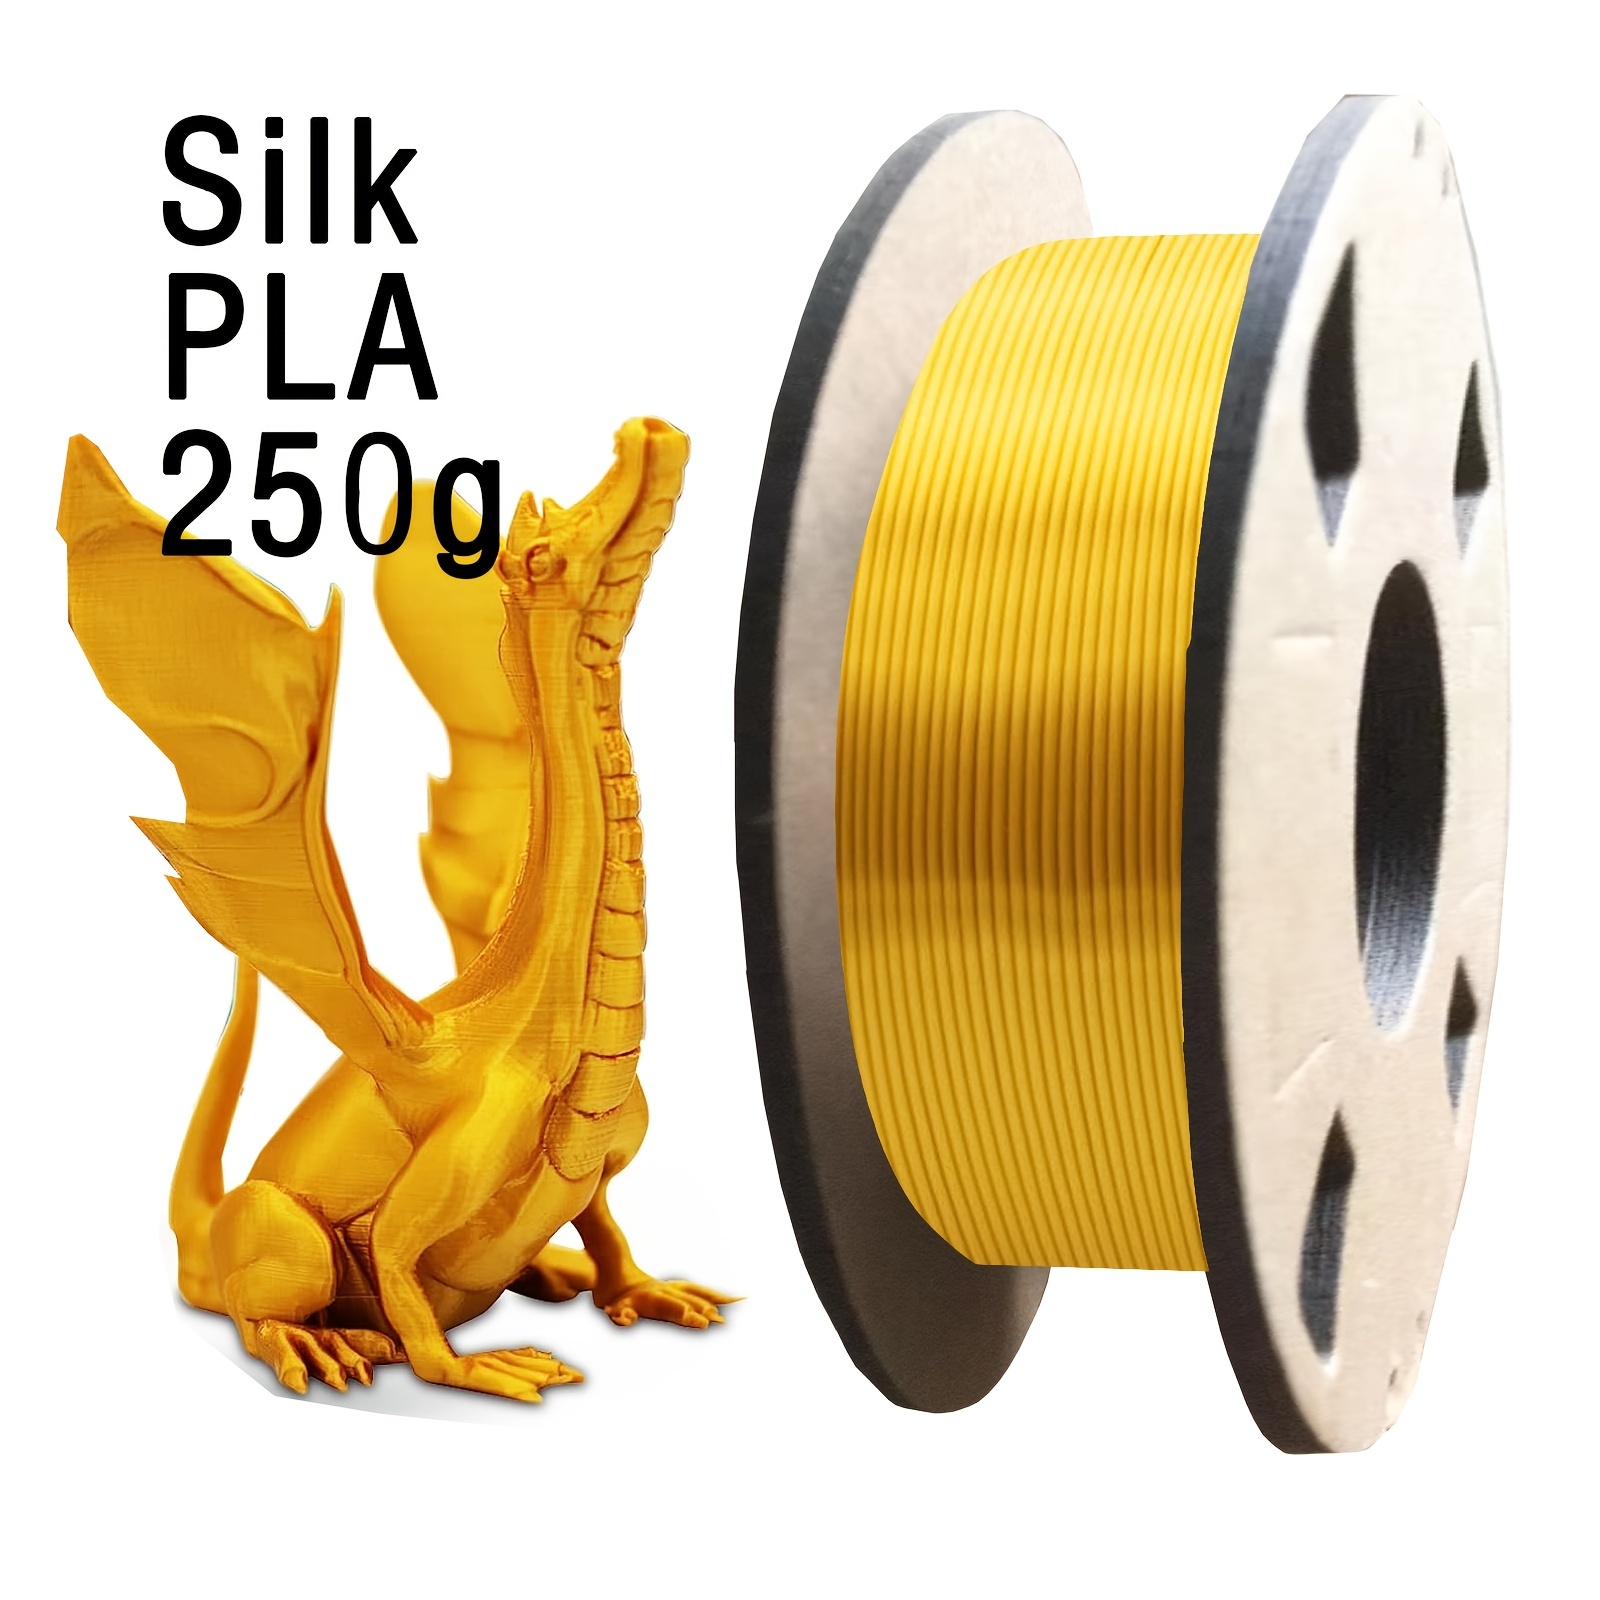 SUNLU Filament PLA+ 1.75mm Blanc, Filament PLA Plus pour